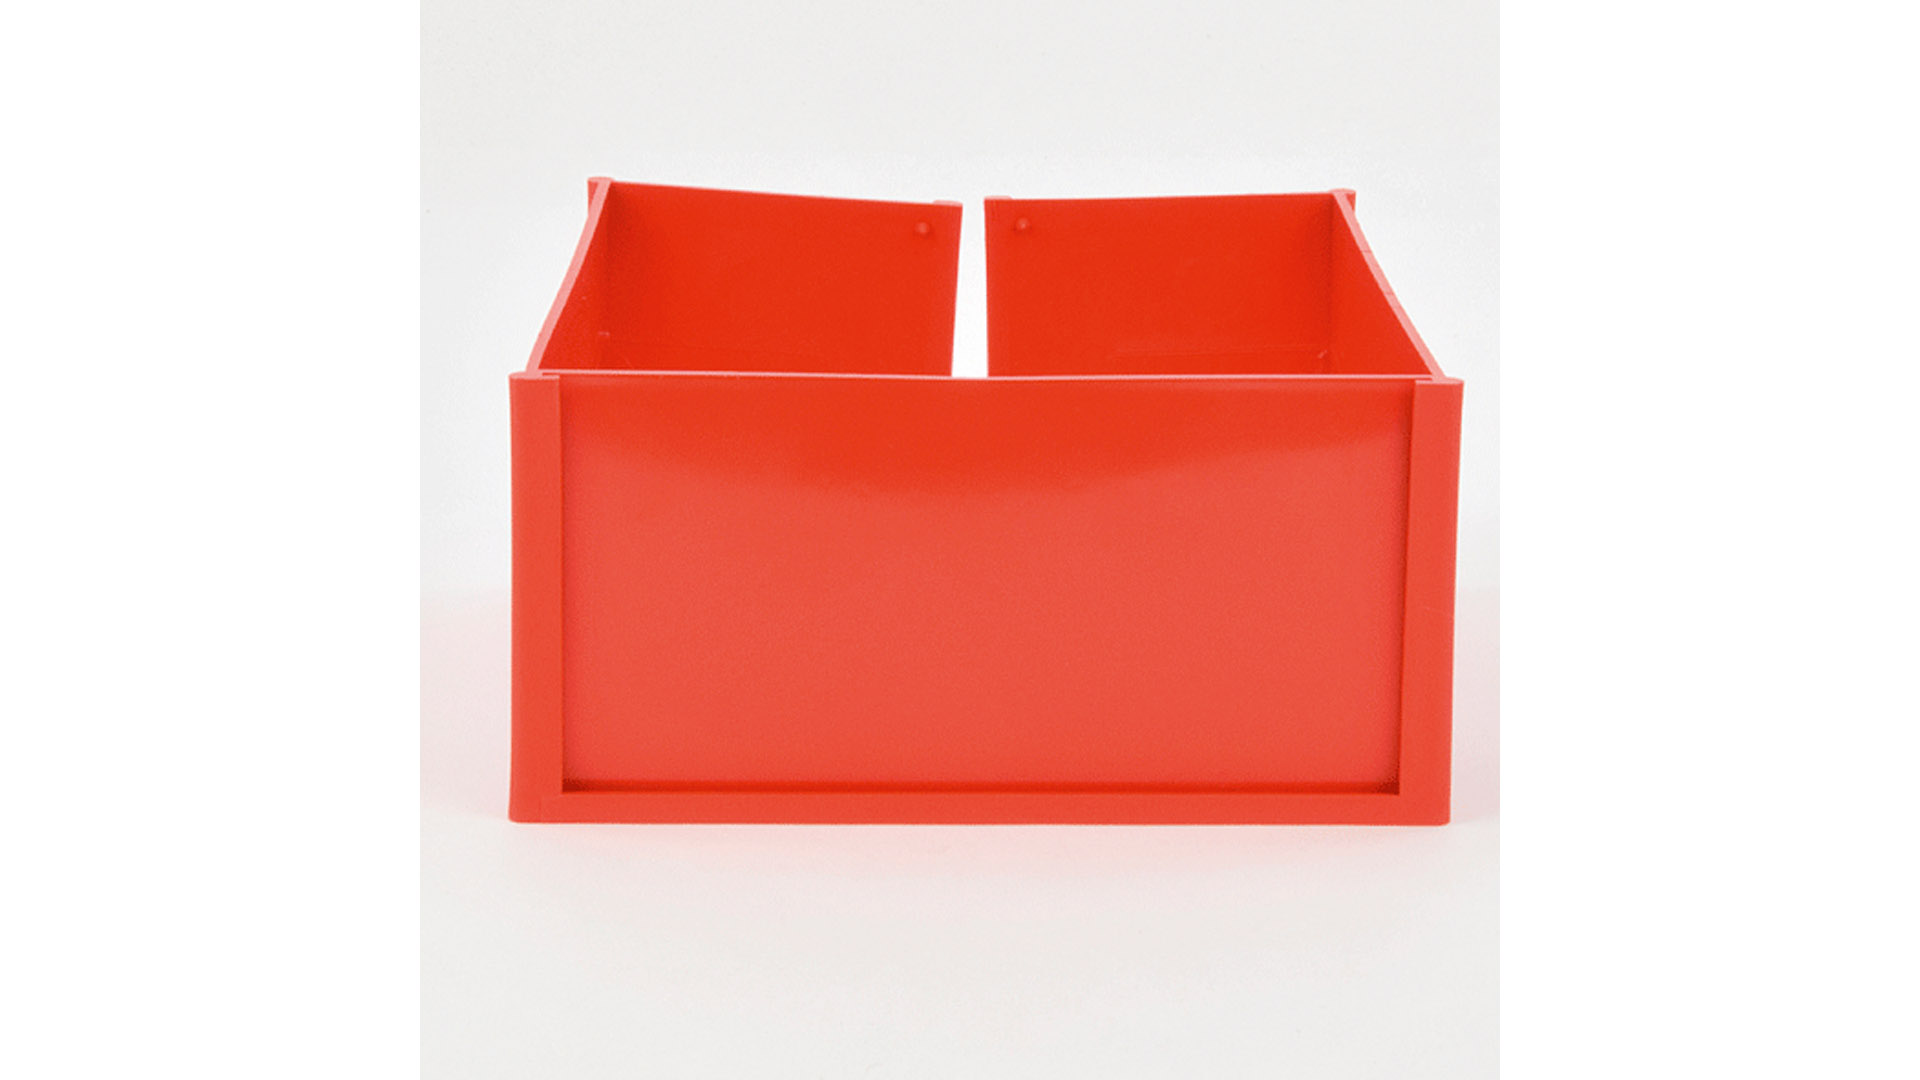 Paletten-ID-Spange, rot, für den Eckfuß der Palettenschmalseite, BxTxH 113x156x73 mm, VE 25 Stück